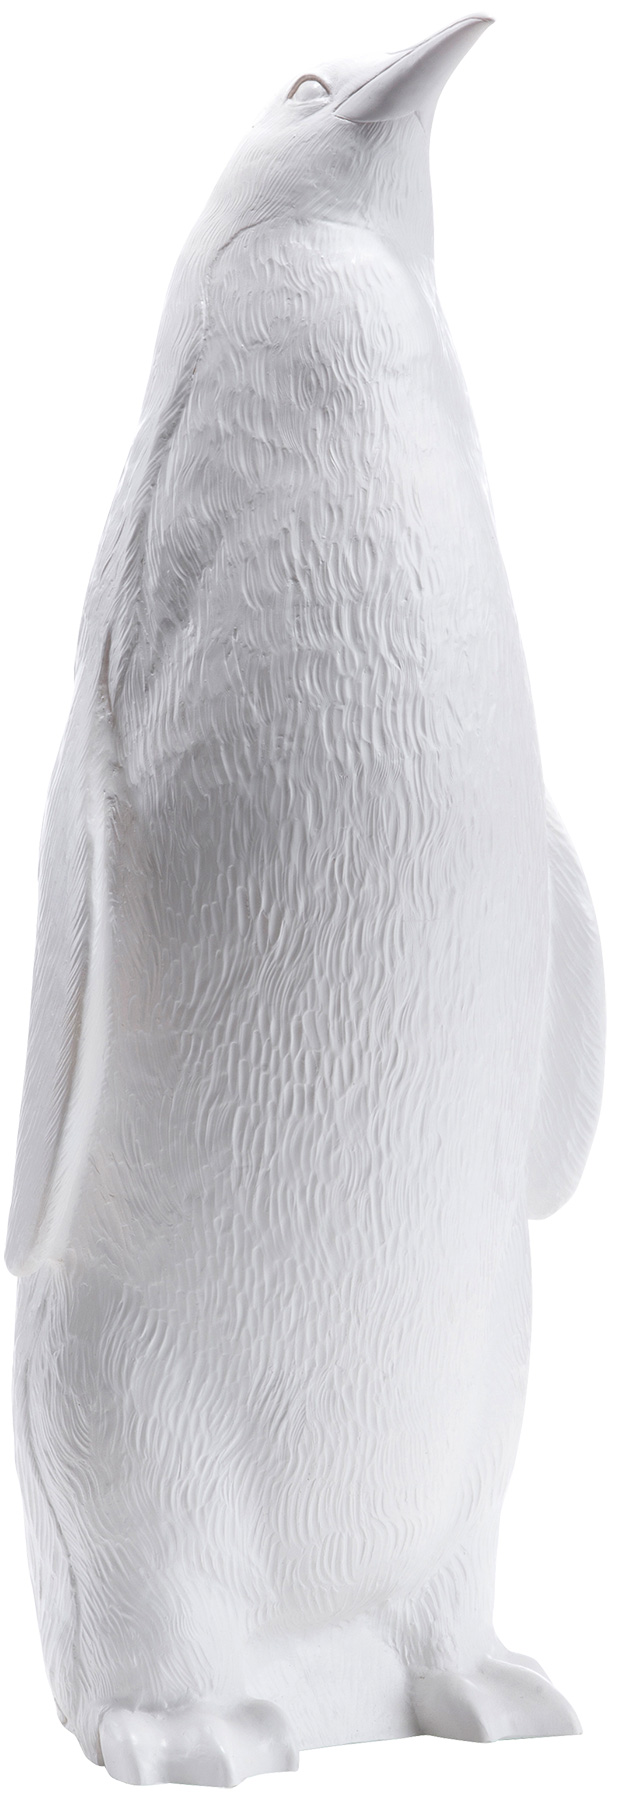 Ottmar Hörl: Skulptur 'Pinguin II aufrecht' (2006), weiße Version